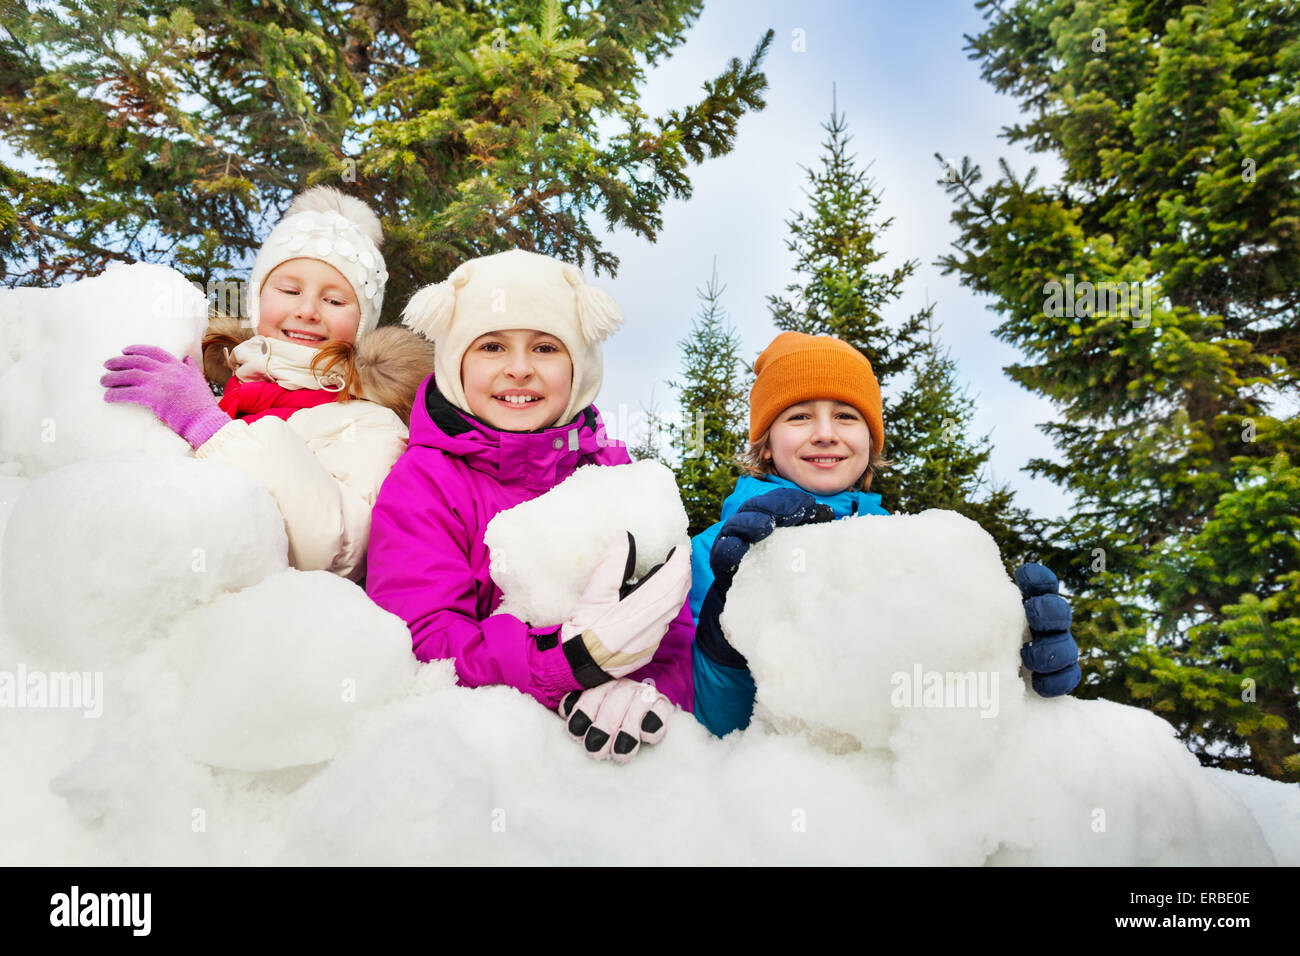 Vue rapprochée d'enfants heureux derrière le fort de neige Banque D'Images